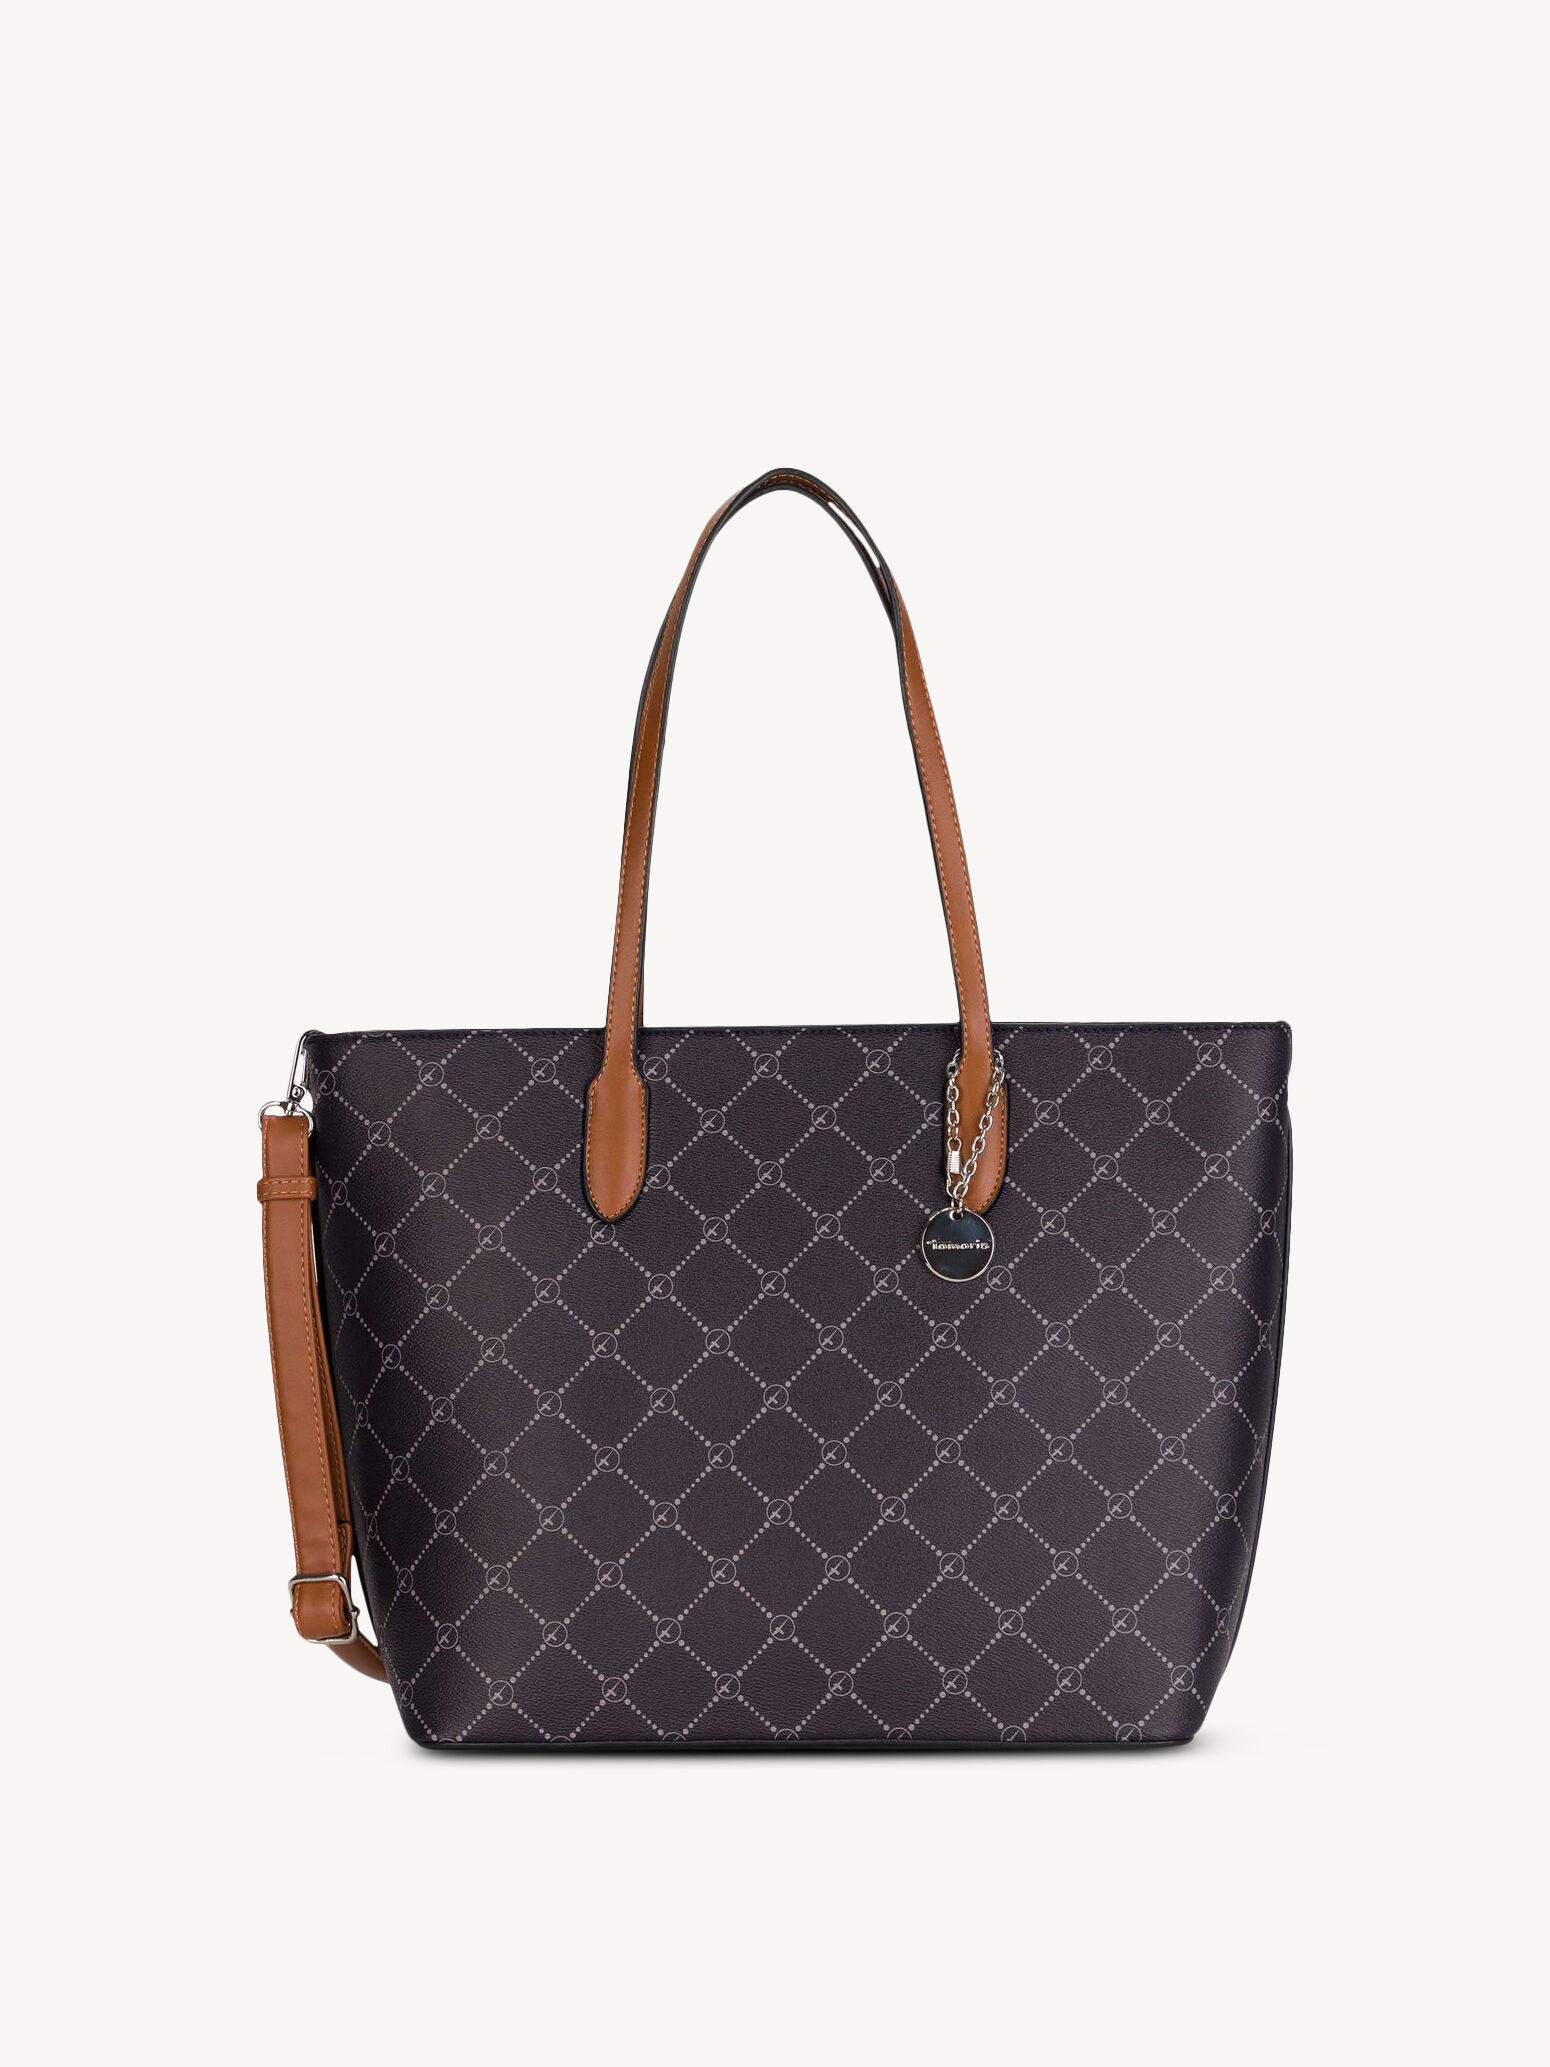 Buy Tamaris Handbags online now!